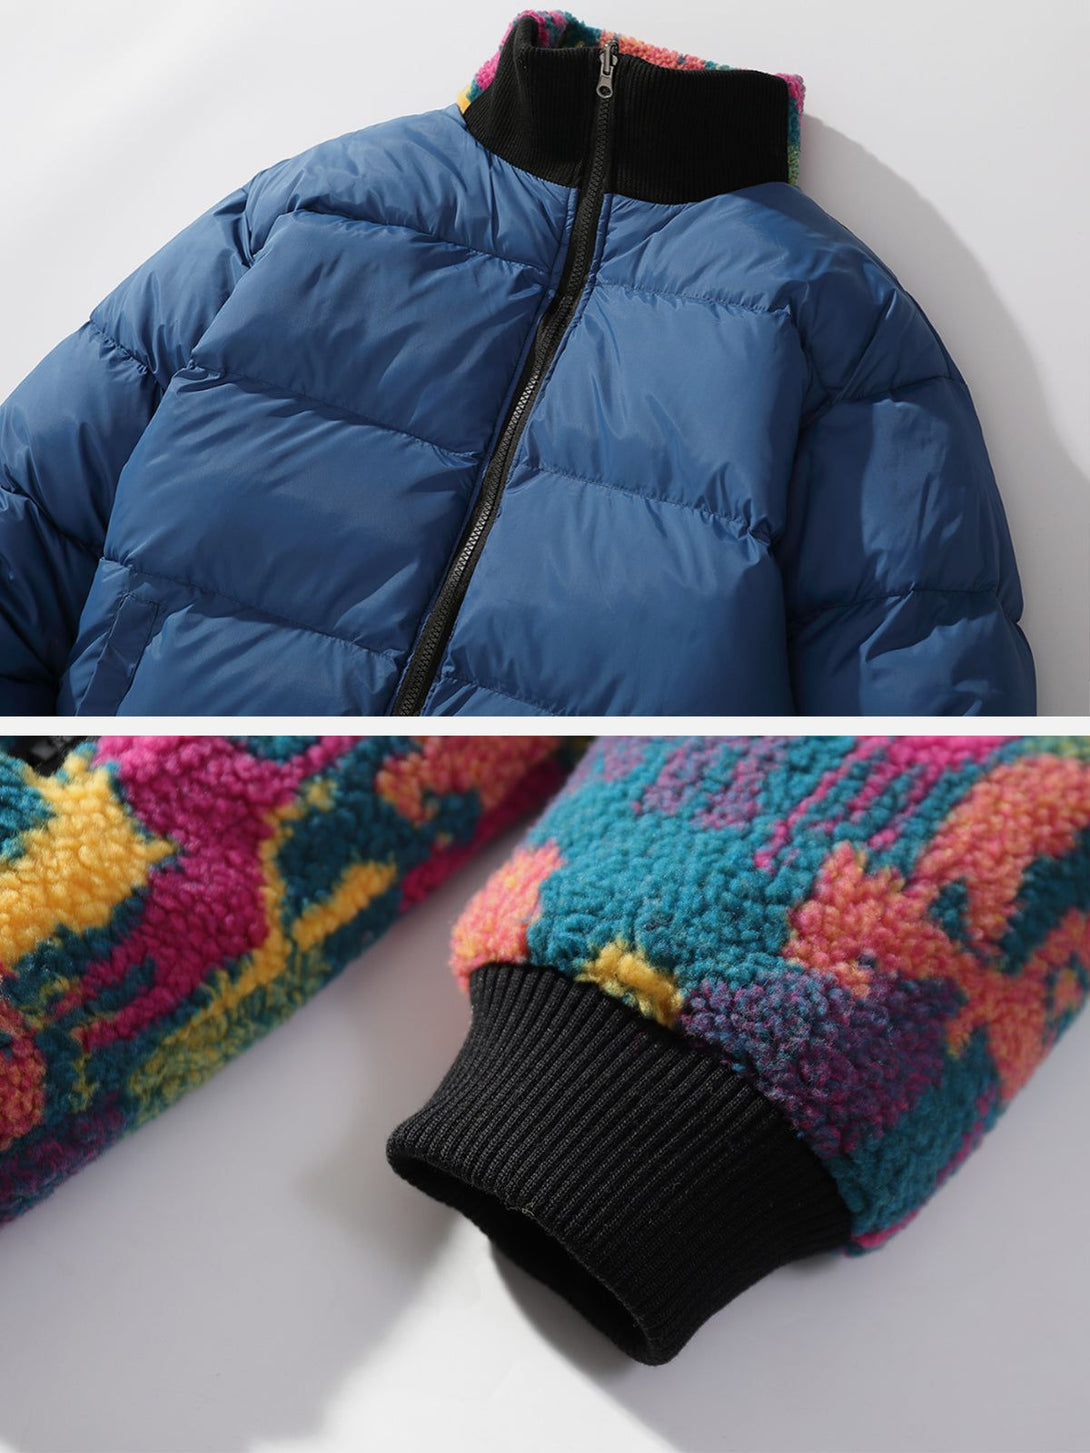 Majesda® - Tie dye "Wearable on both sides" Winter Coat outfit ideas streetwear fashion